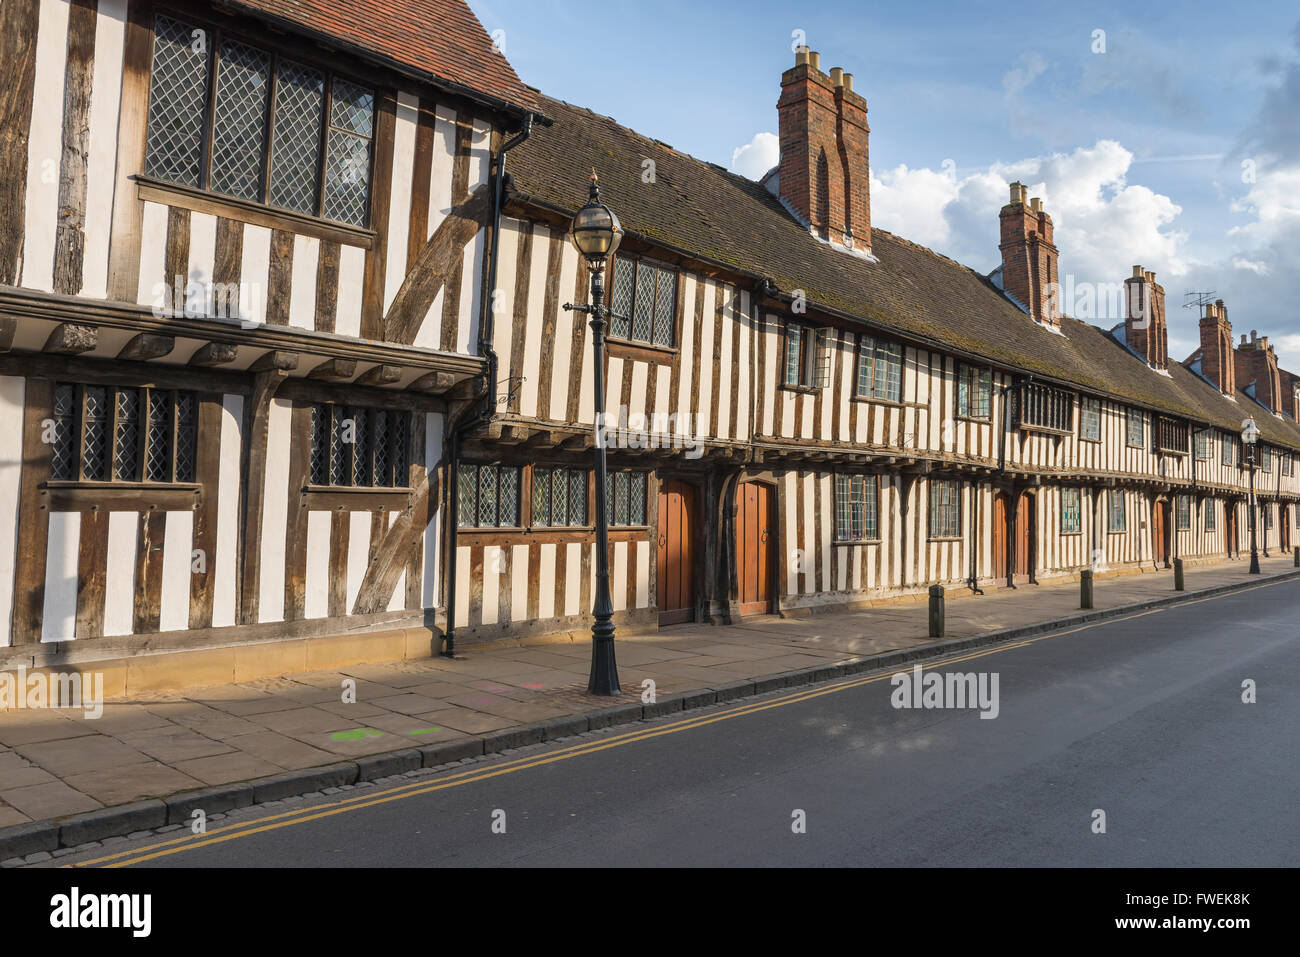 Casa medievale Inghilterra, vista delle tipiche case medievali a graticcio elemosina in Church Street, Stratford Upon Avon, Inghilterra, Regno Unito Foto Stock